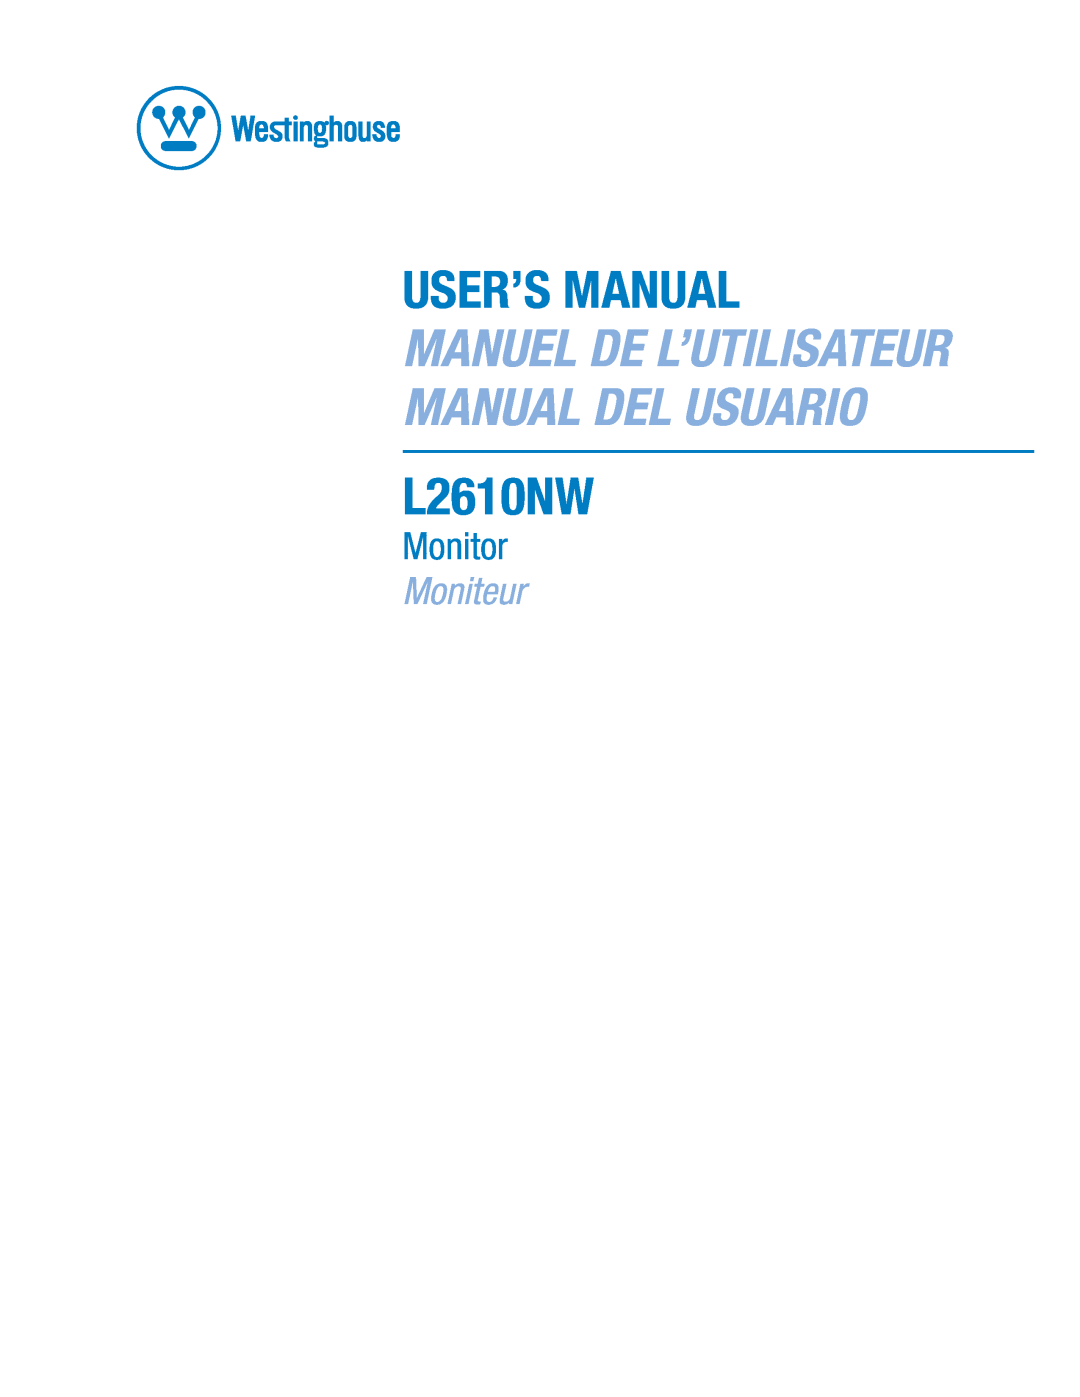 Westinghouse L2610NW user manual User’S Manual, Manuel De L’Utilisateur Manual Del Usuario, Monitor, Moniteur 